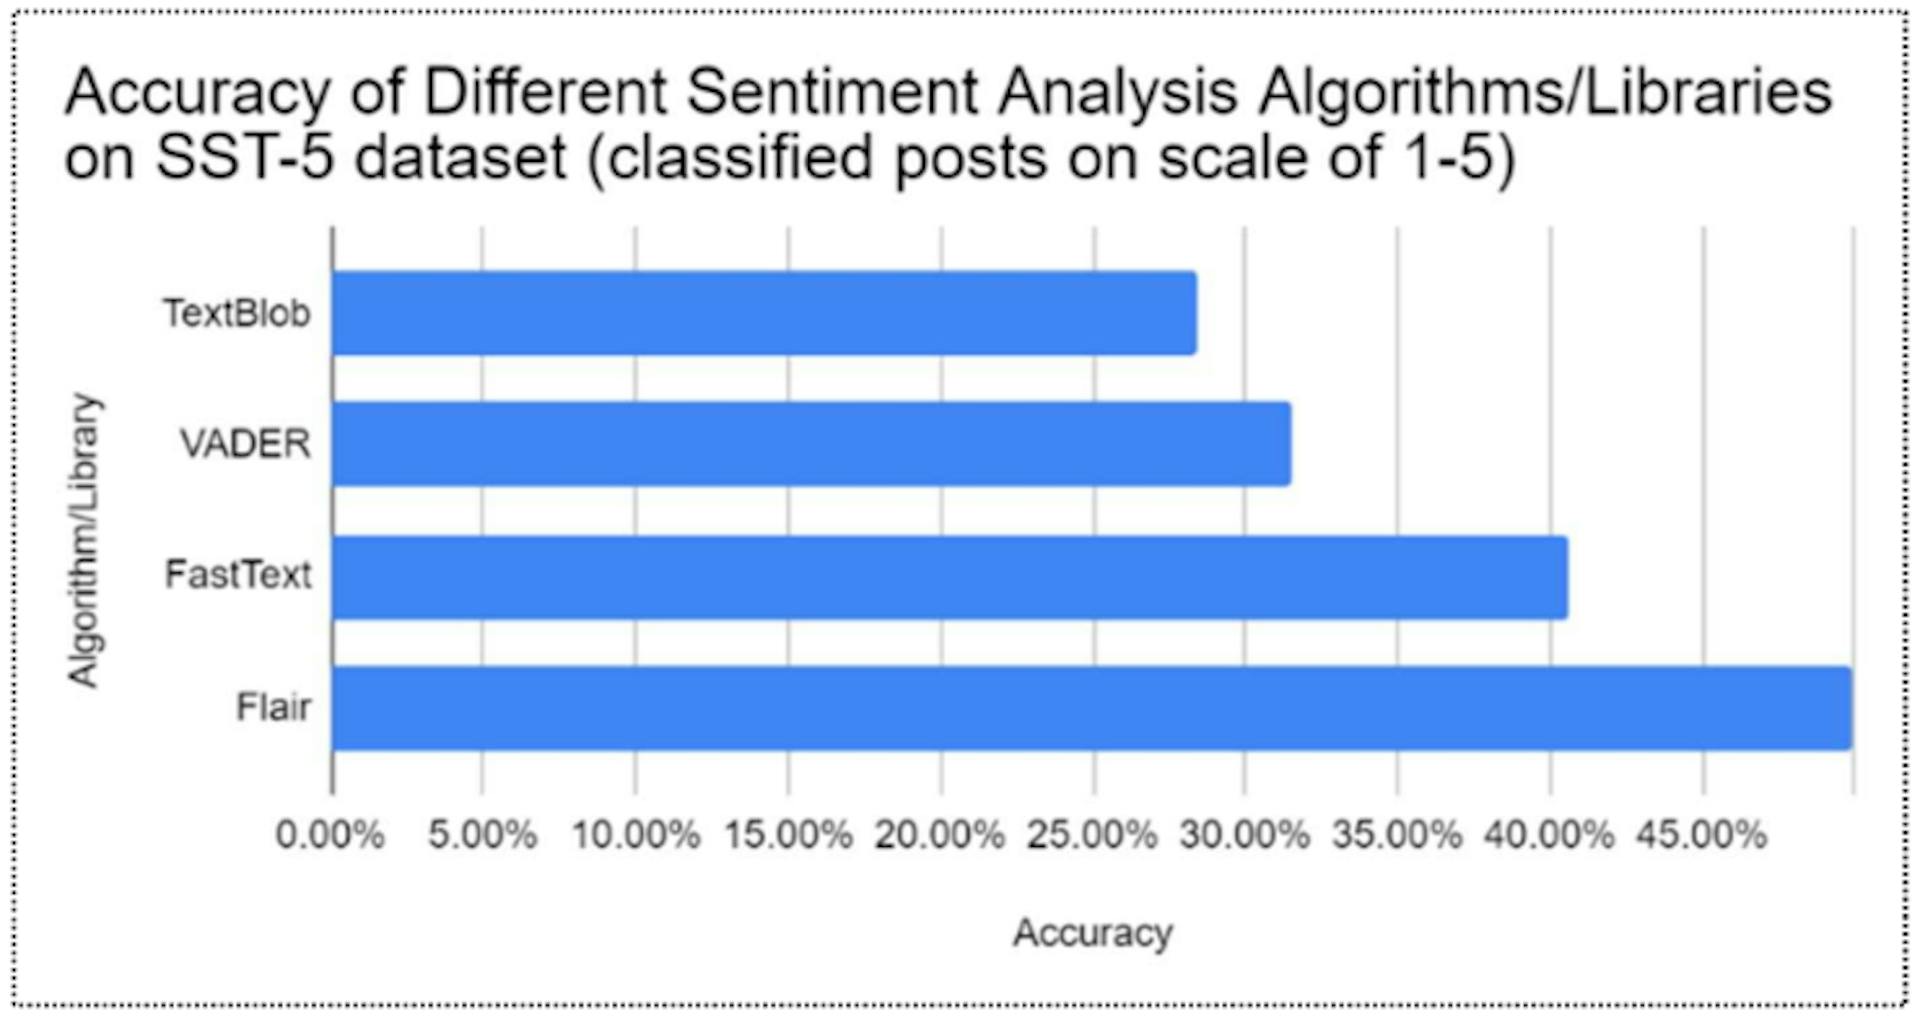 Figura 4: Comparação da precisão de diferentes algoritmos de análise de sentimento no banco de dados SST-5